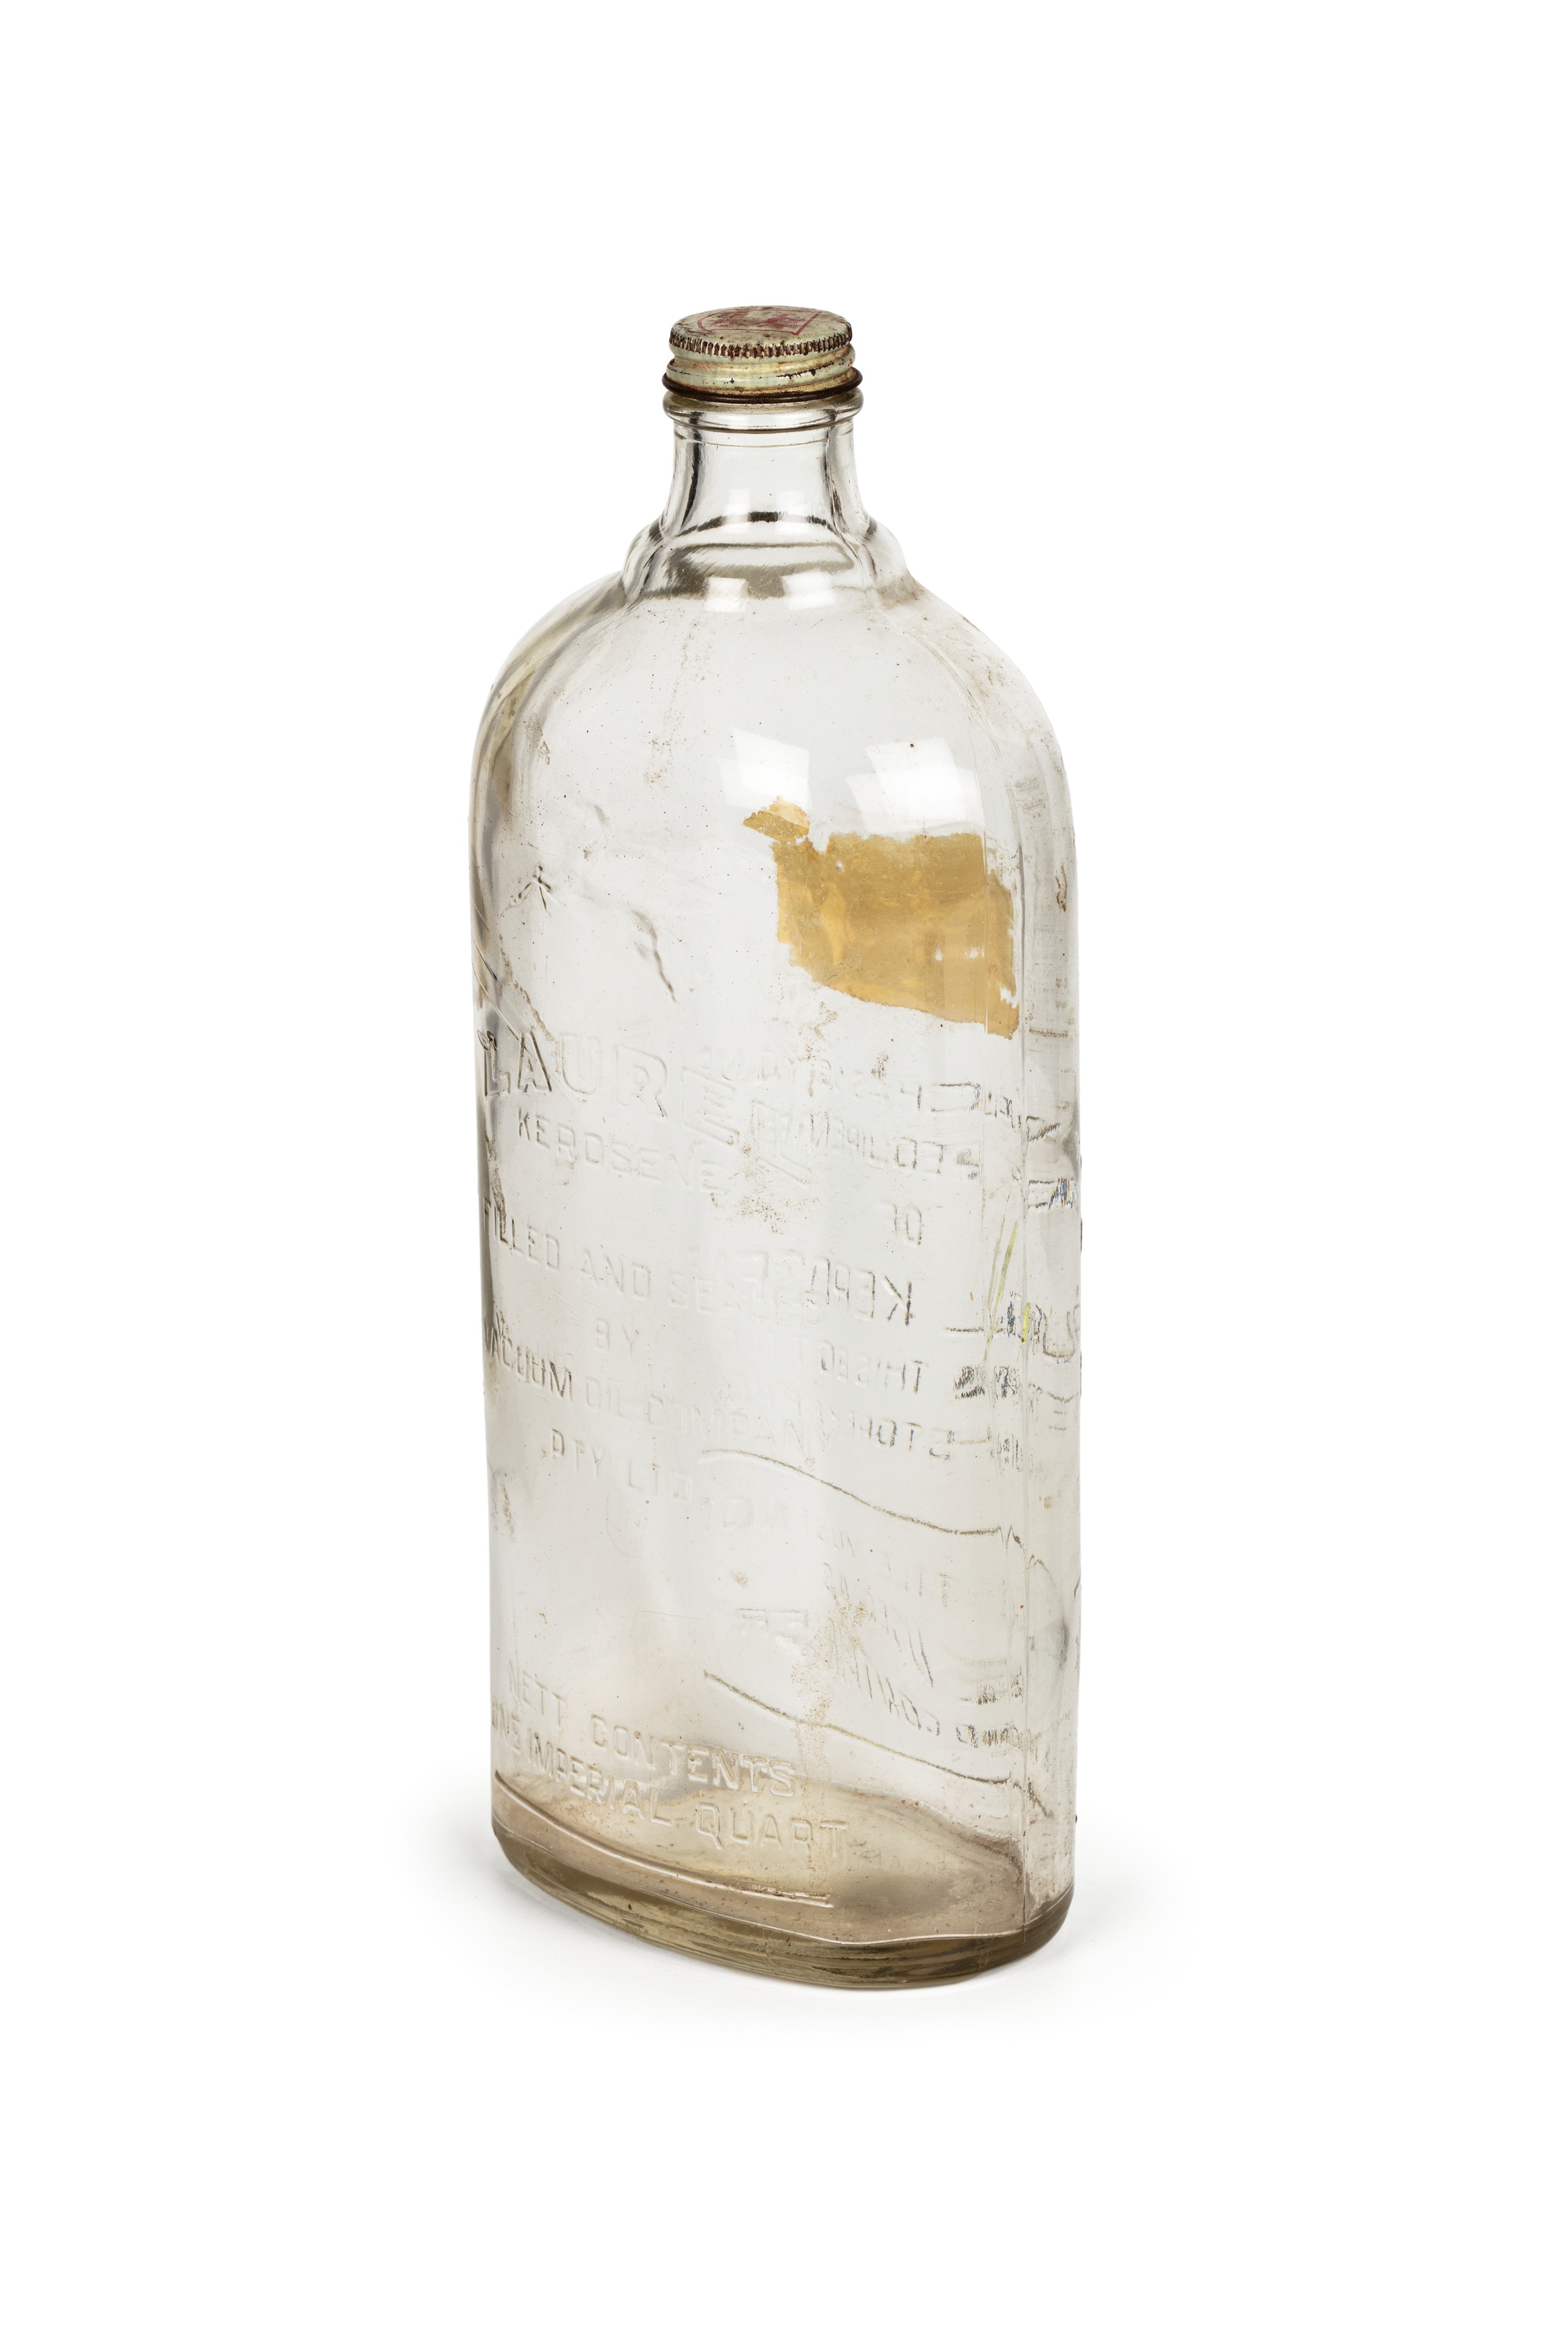 Bottle of 'Laurel Kerosene' by Vacuum Oil Company Pty Ltd